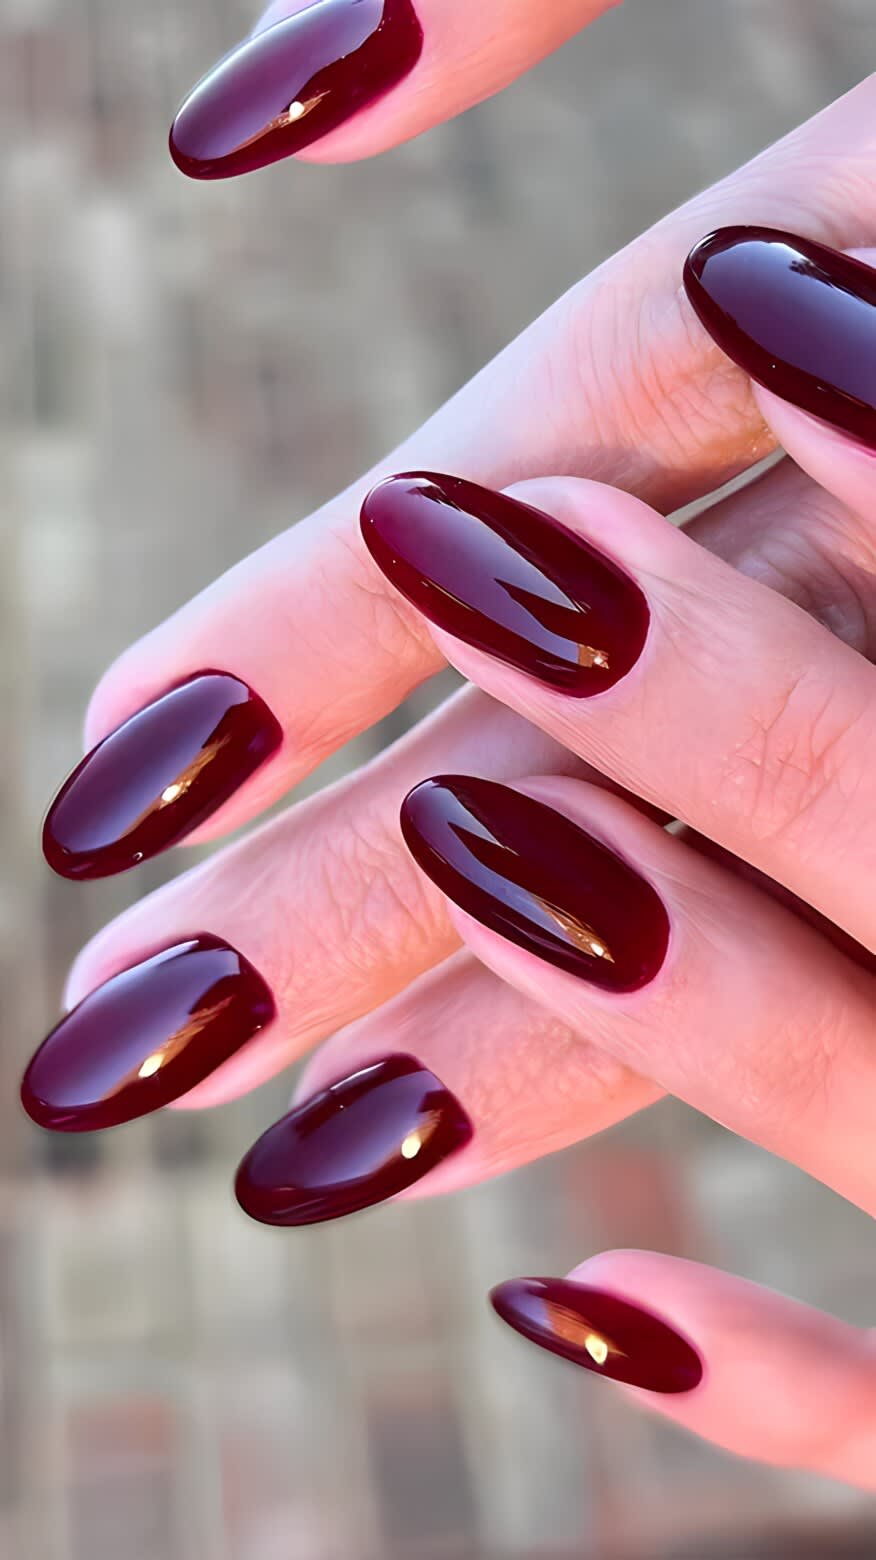 The cherry mocha nail trend